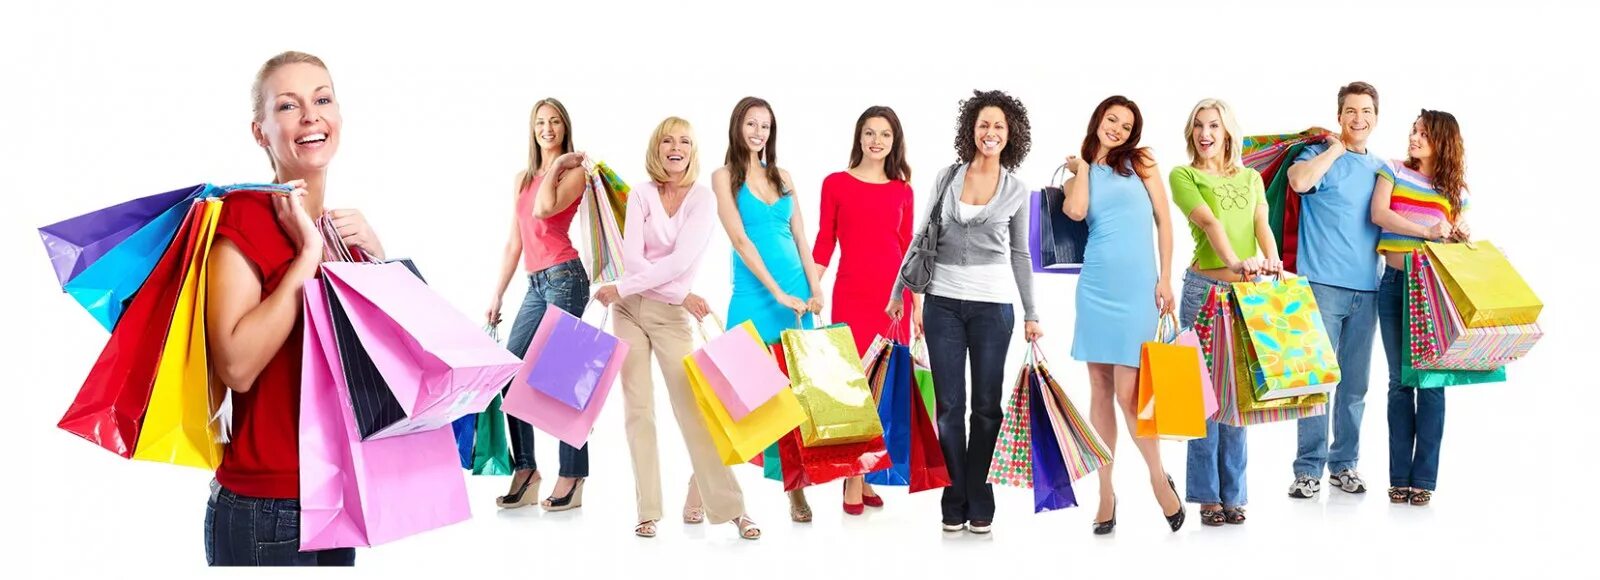 Крупная закупка. Люди с покупками. Женщина с покупками. Обложка для интернет магазина. Обложка для магазина одежды.